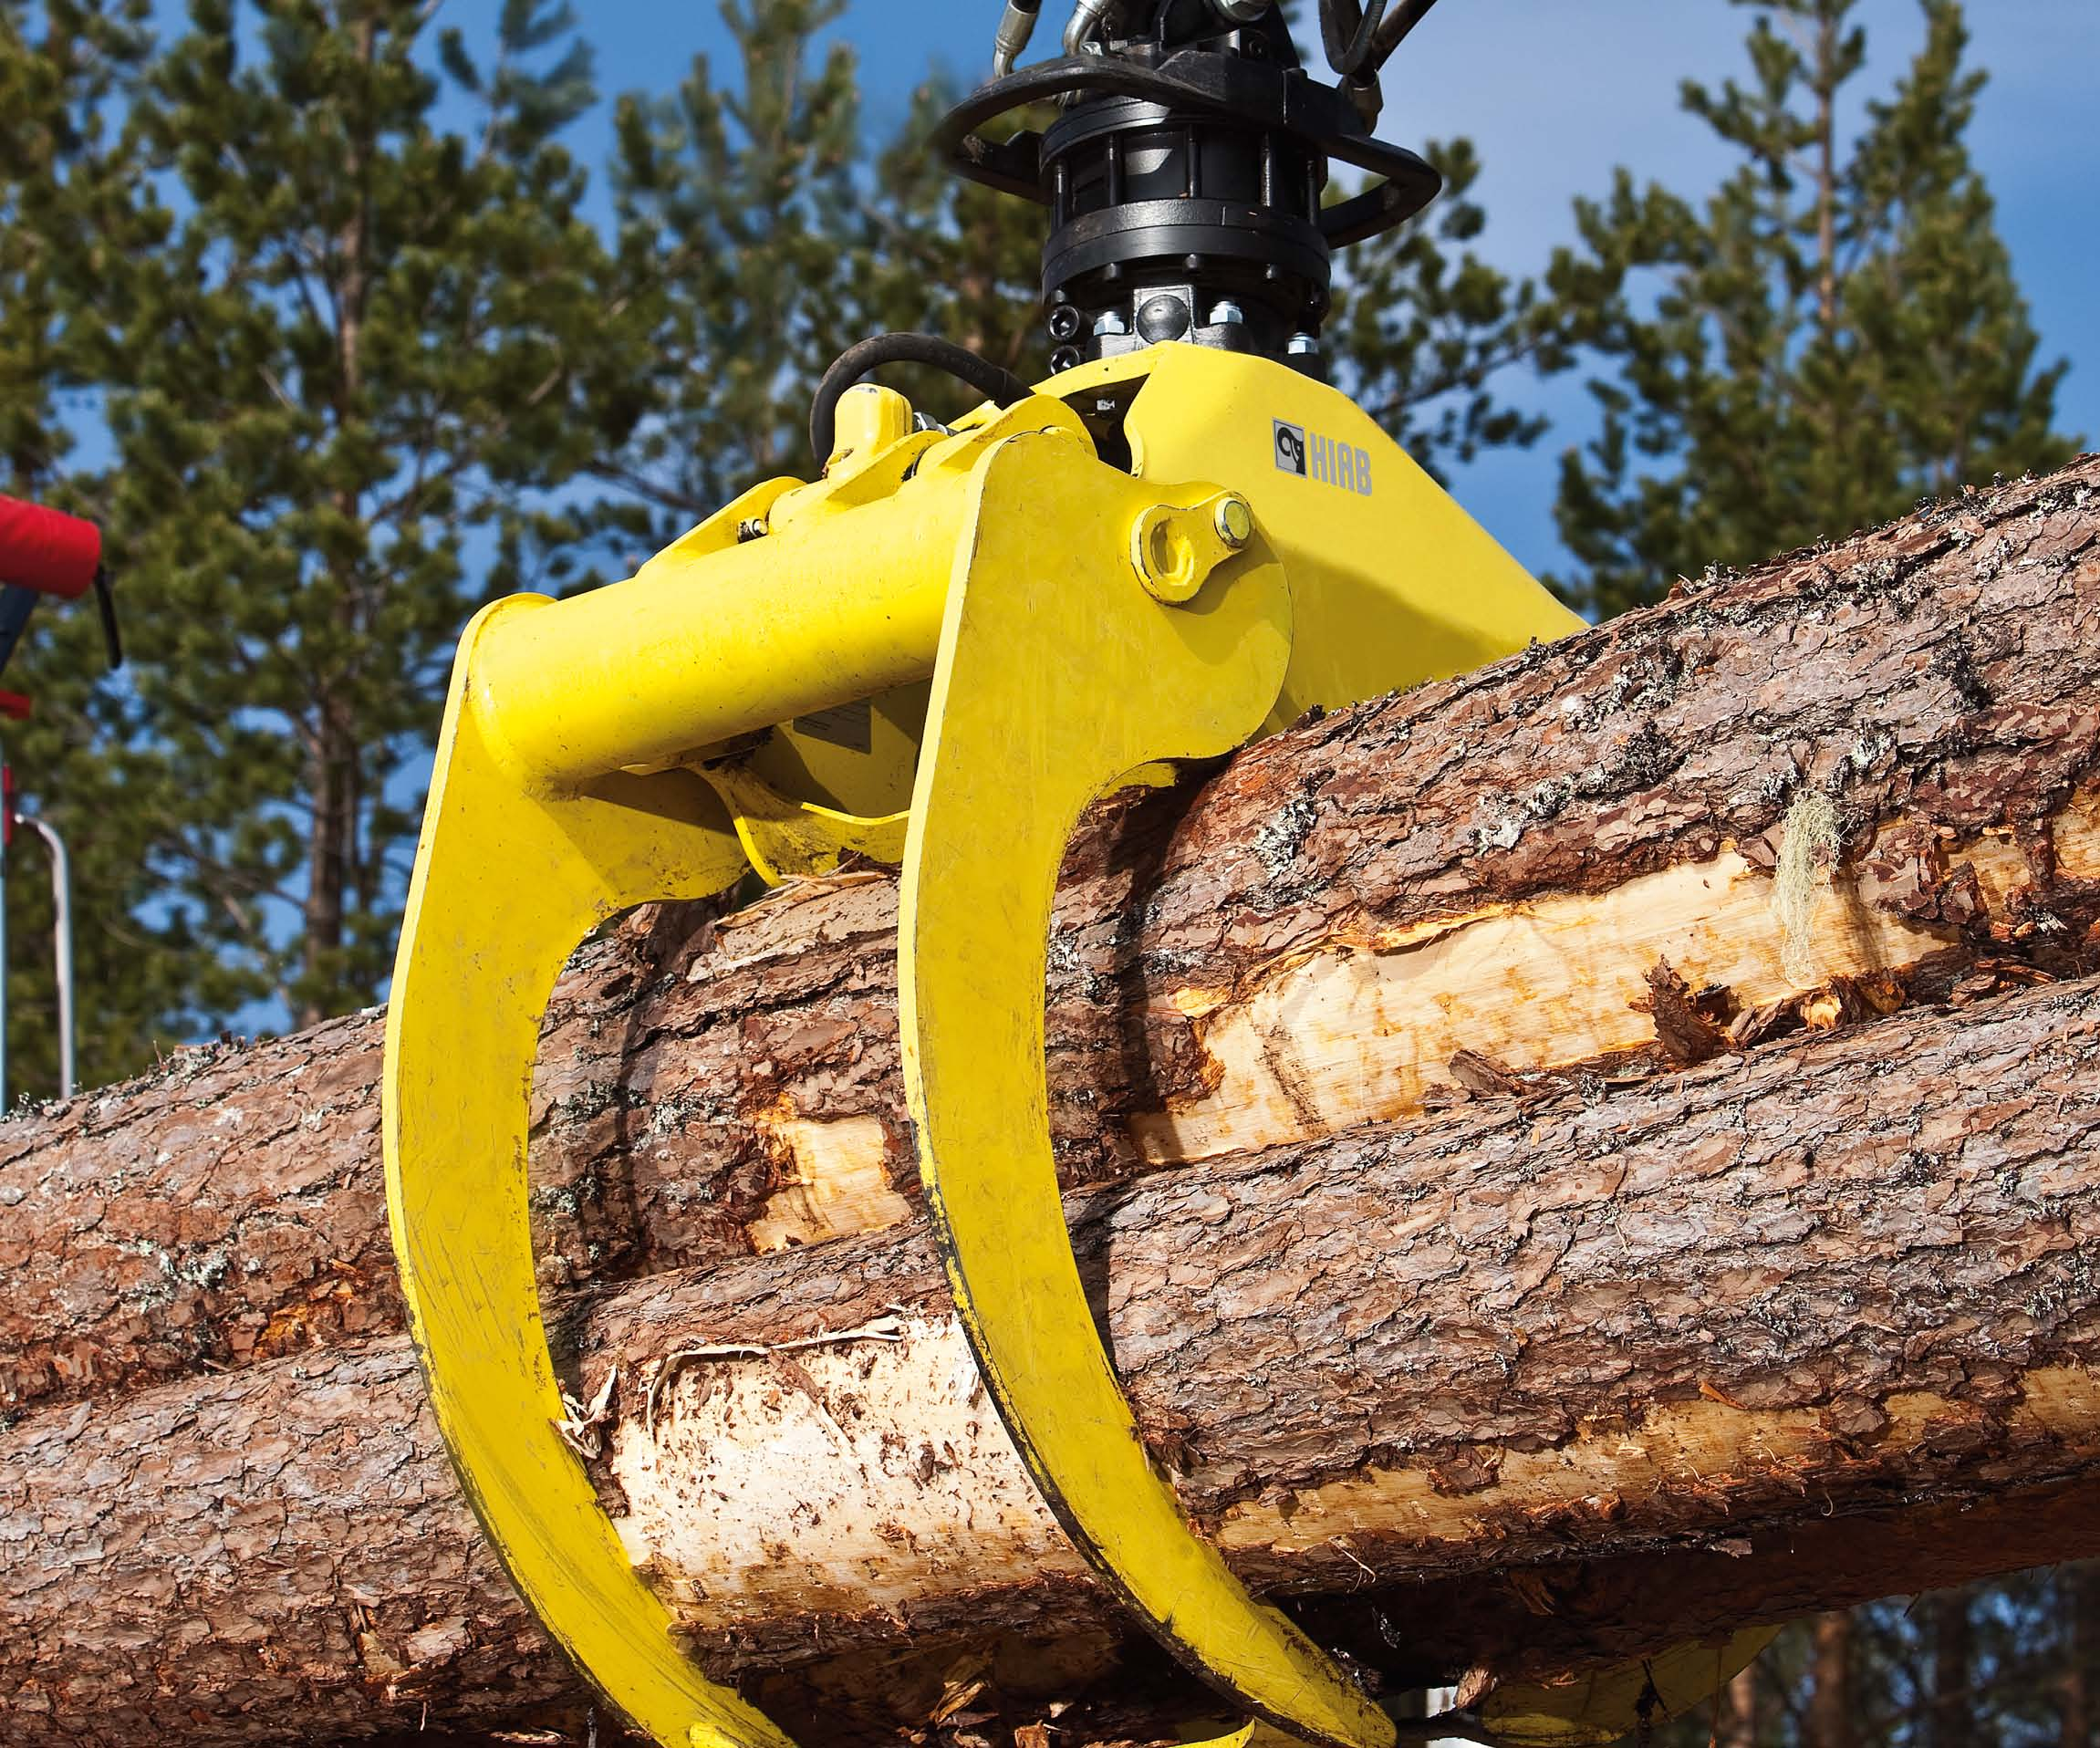 ahmari joka käyttöön iab-kahmarimallistossa on useita eri vaihtoehtoja puun ja kierrätysmateriaalien käsittelyyn.